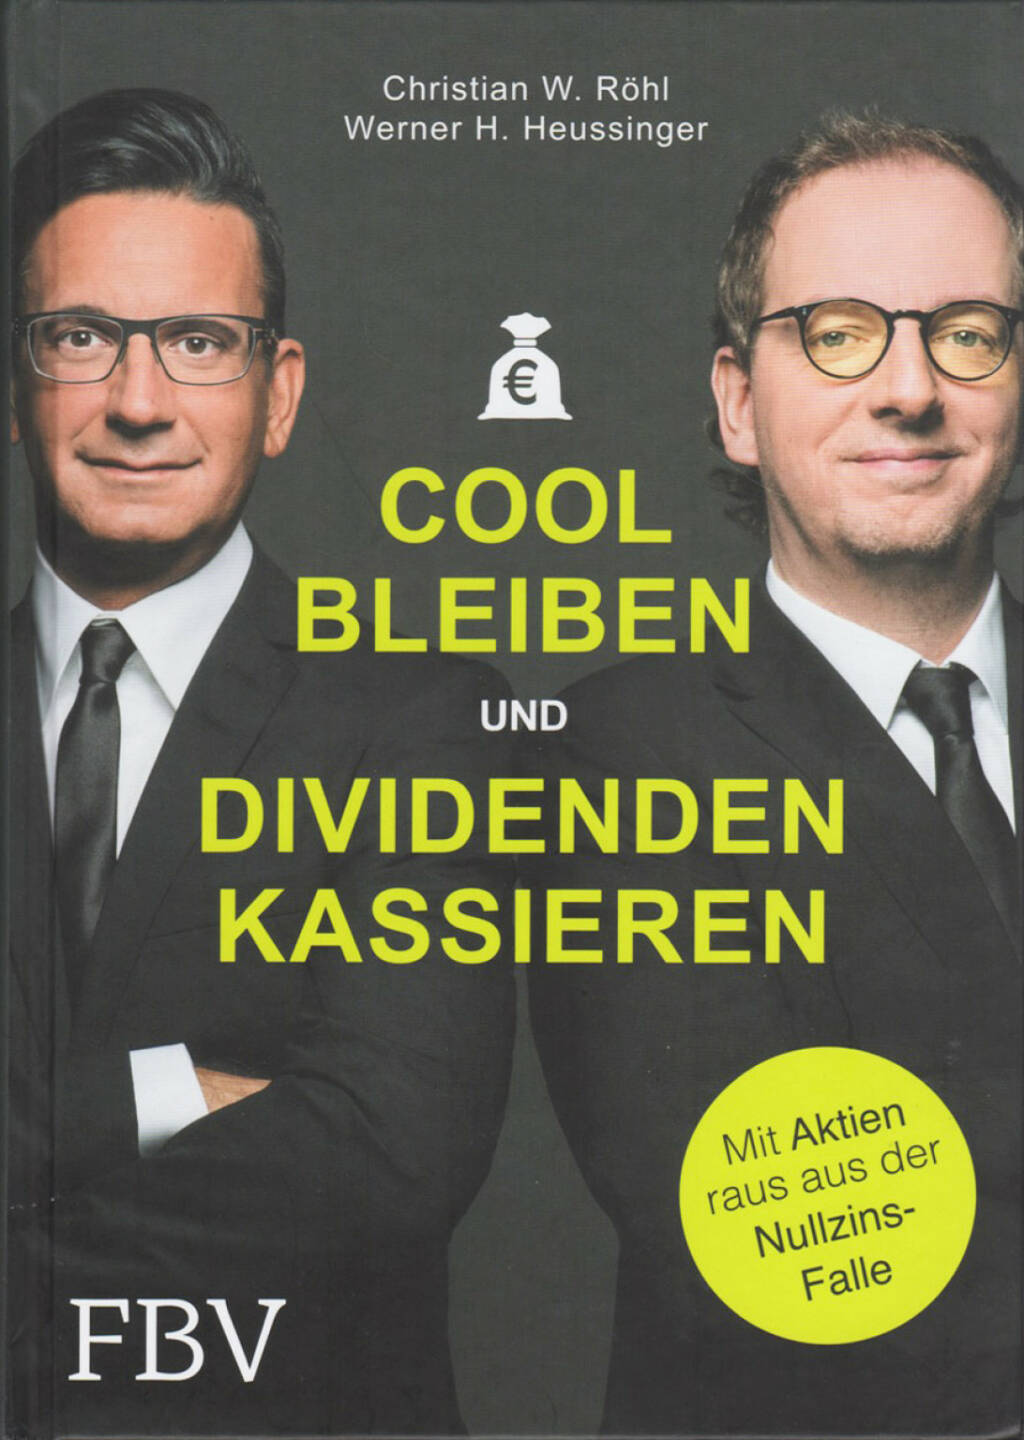  Christian W. Röhl & Werner H. Heussinger - Cool bleiben und Dividenden kassieren: Mit Aktien raus aus der Nullzins-Falle http://boerse-social.com/financebooks/show/werner_h_heussinger_christian_w_rohl_-_cool_bleiben_und_dividenden_kassieren_mit_aktien_raus_aus_der_nullzins-falle